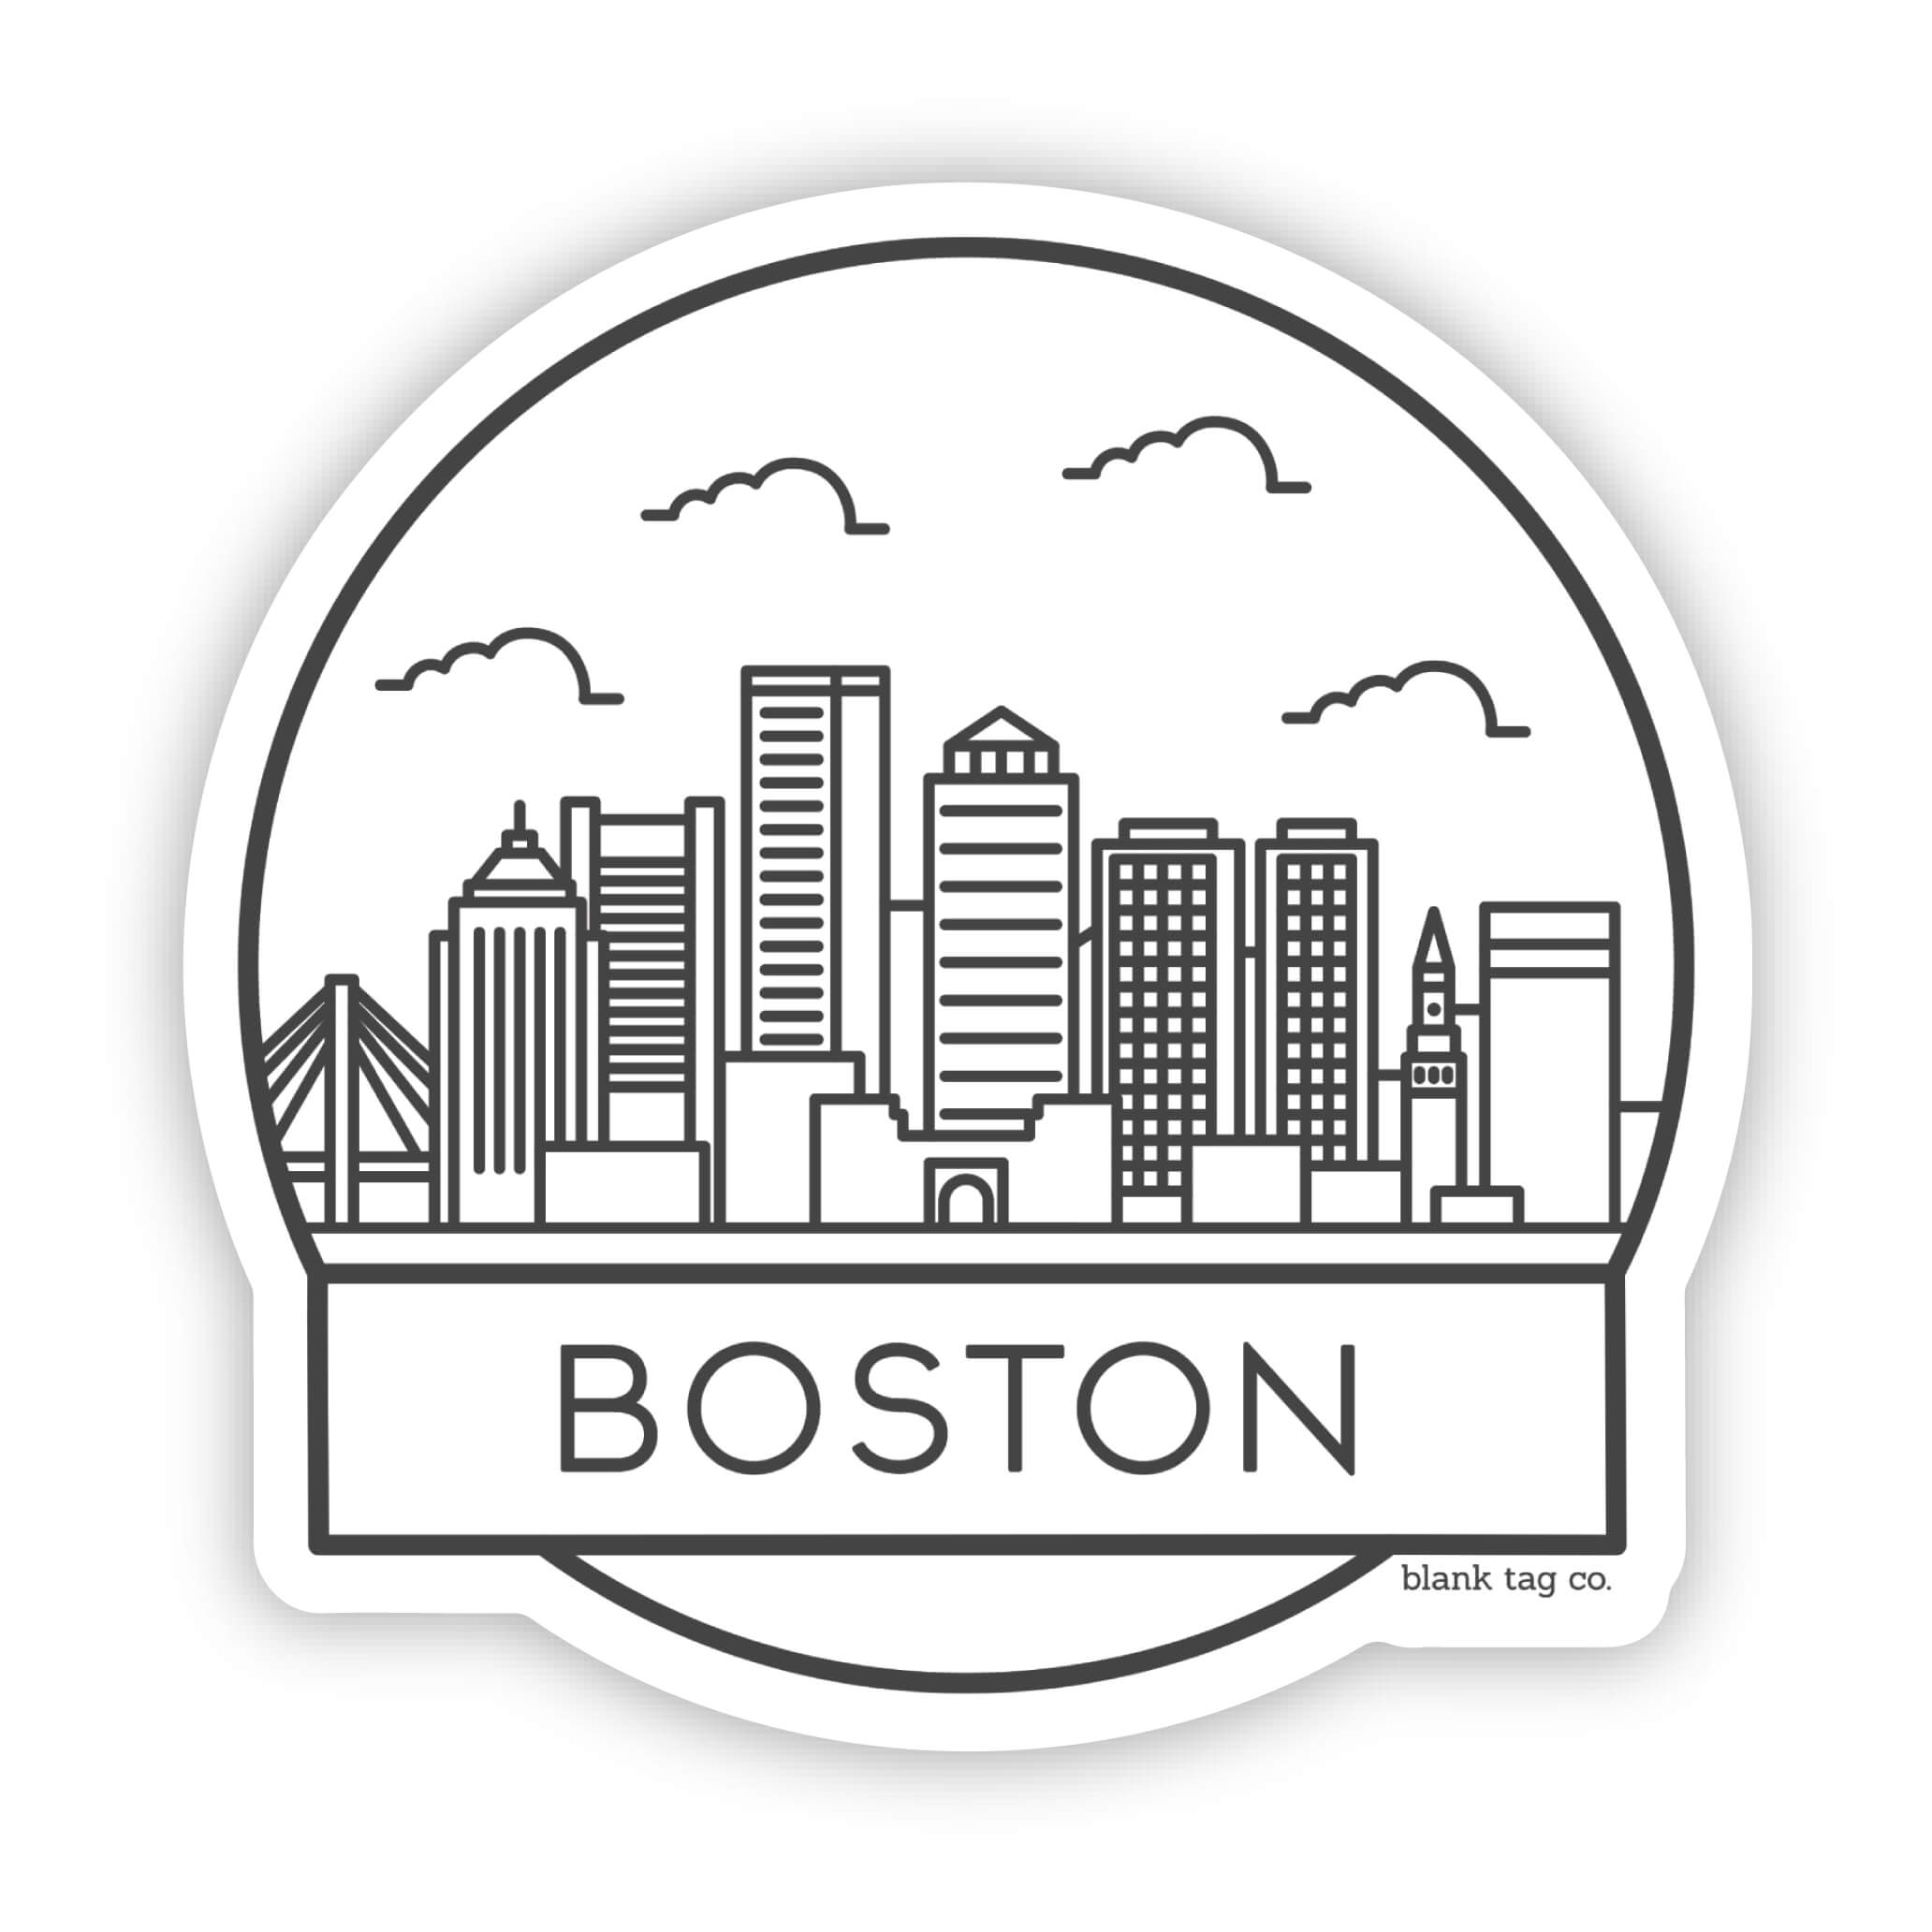 The Boston Cityscape Sticker